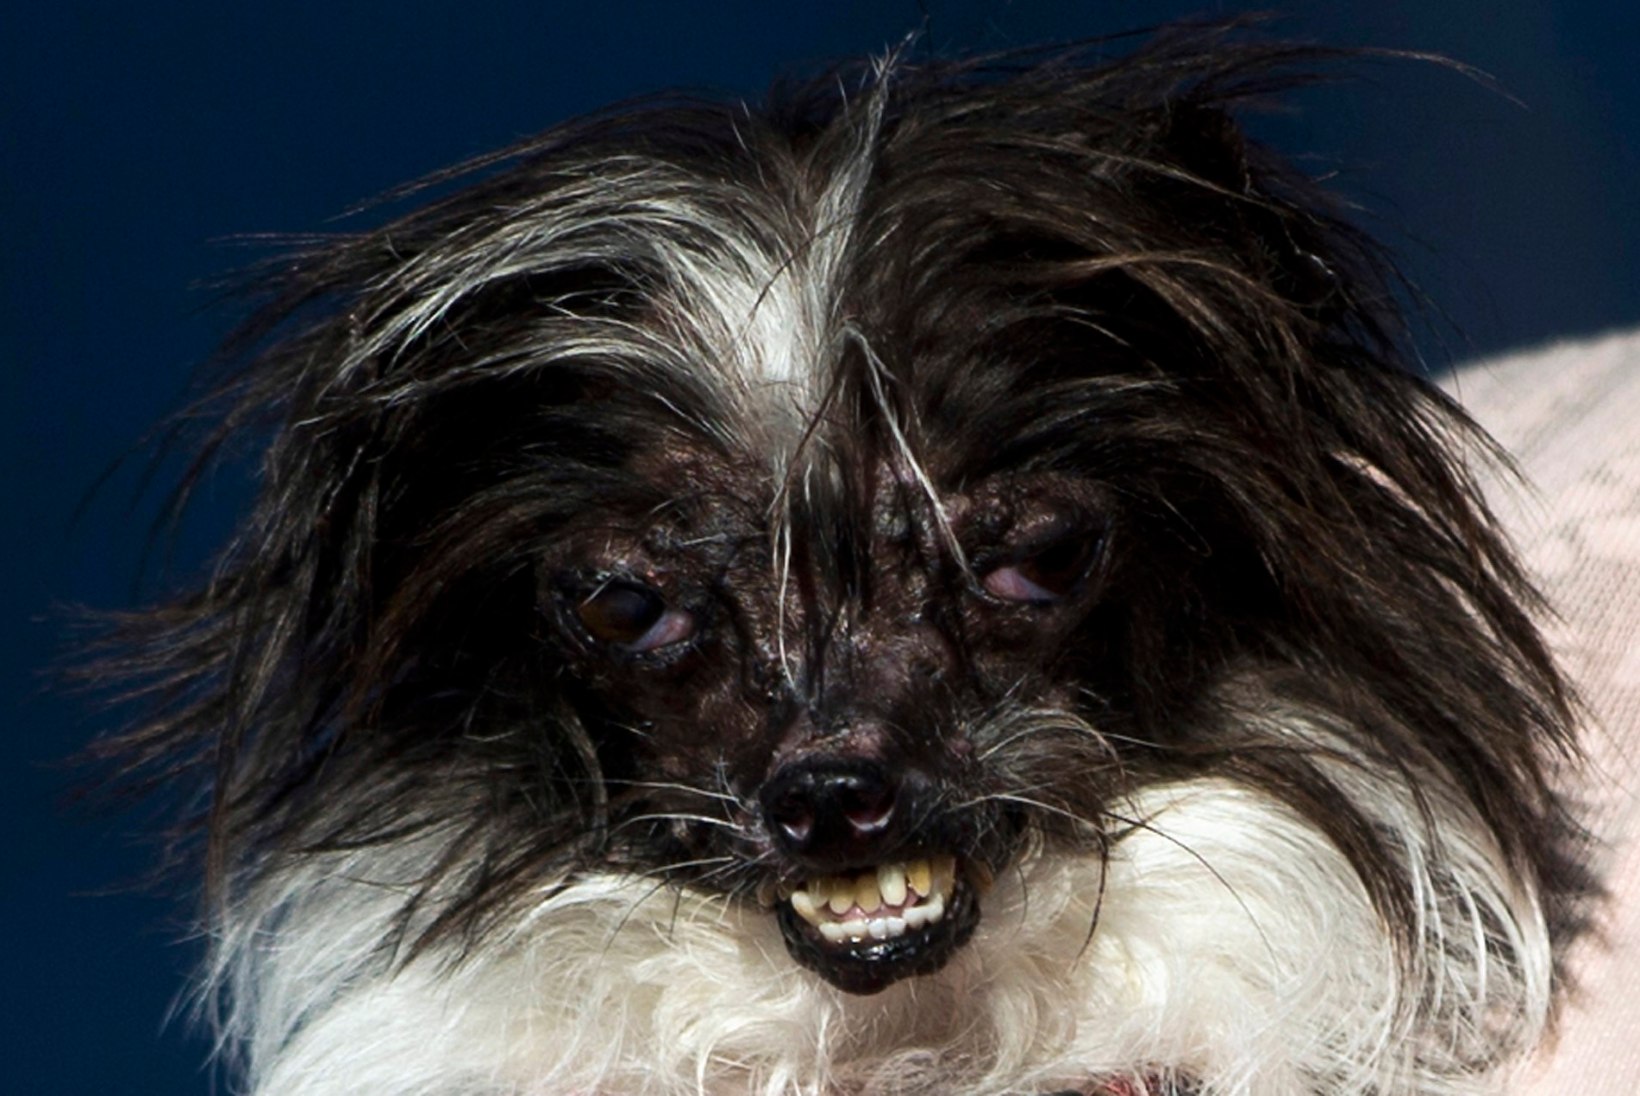 FOTOD: maailma koledaimaks koeraks valiti põletusarmidega Peanut